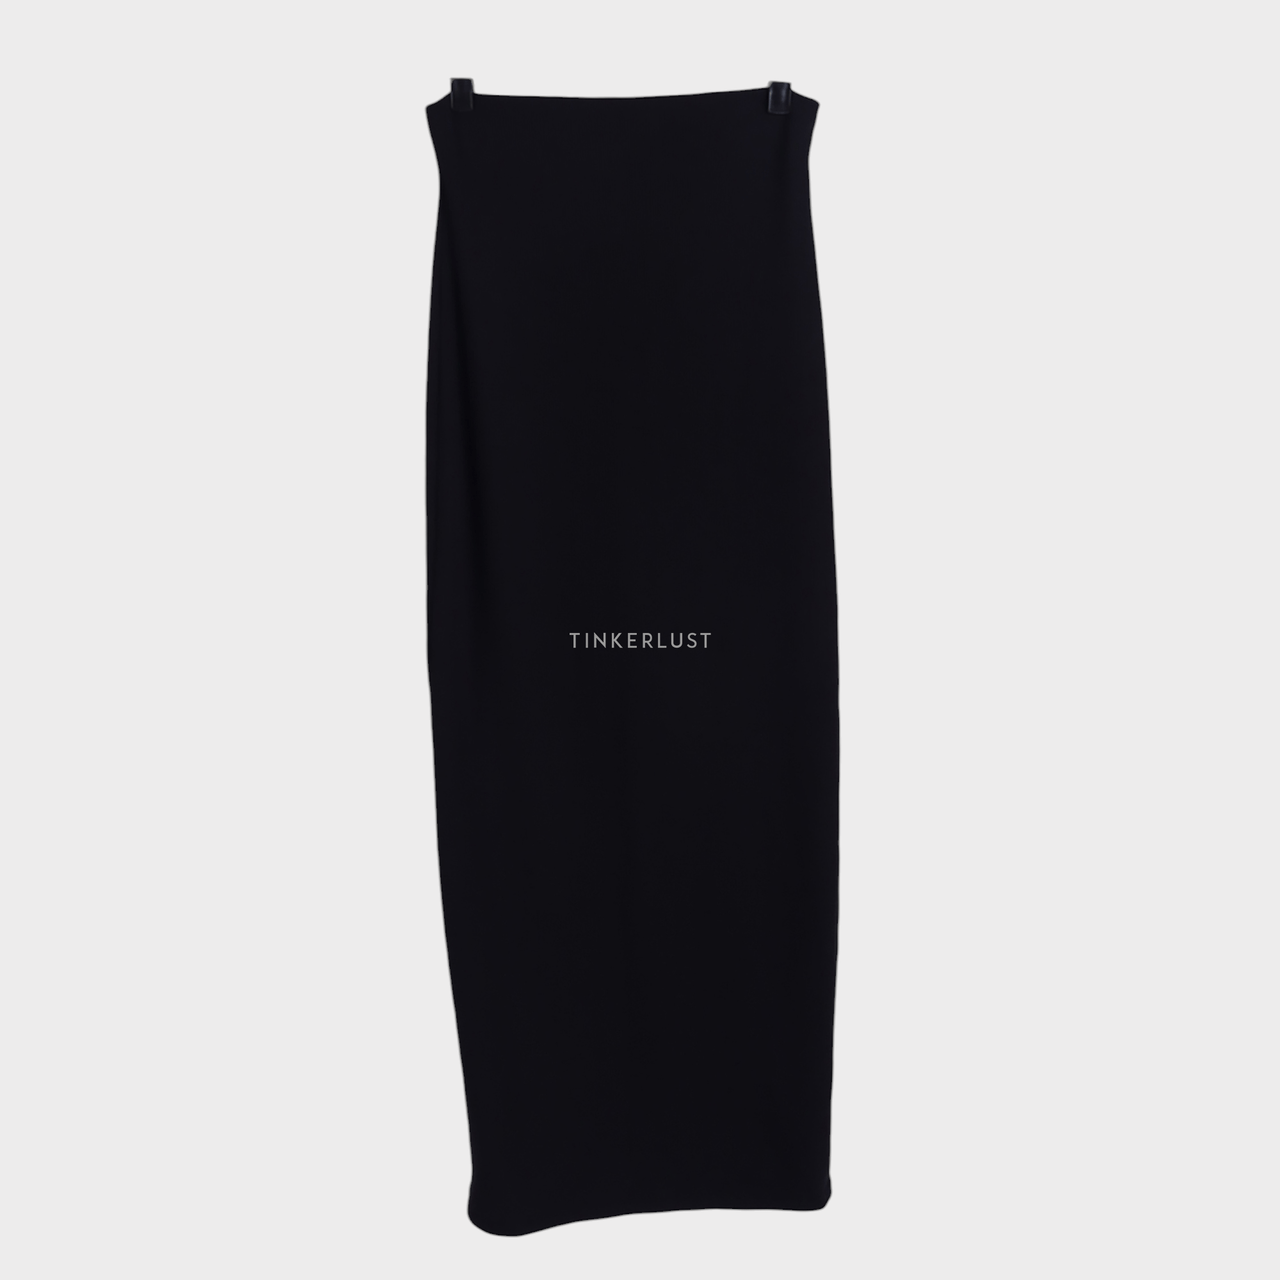 AVGAL Black Slit Midi Skirt